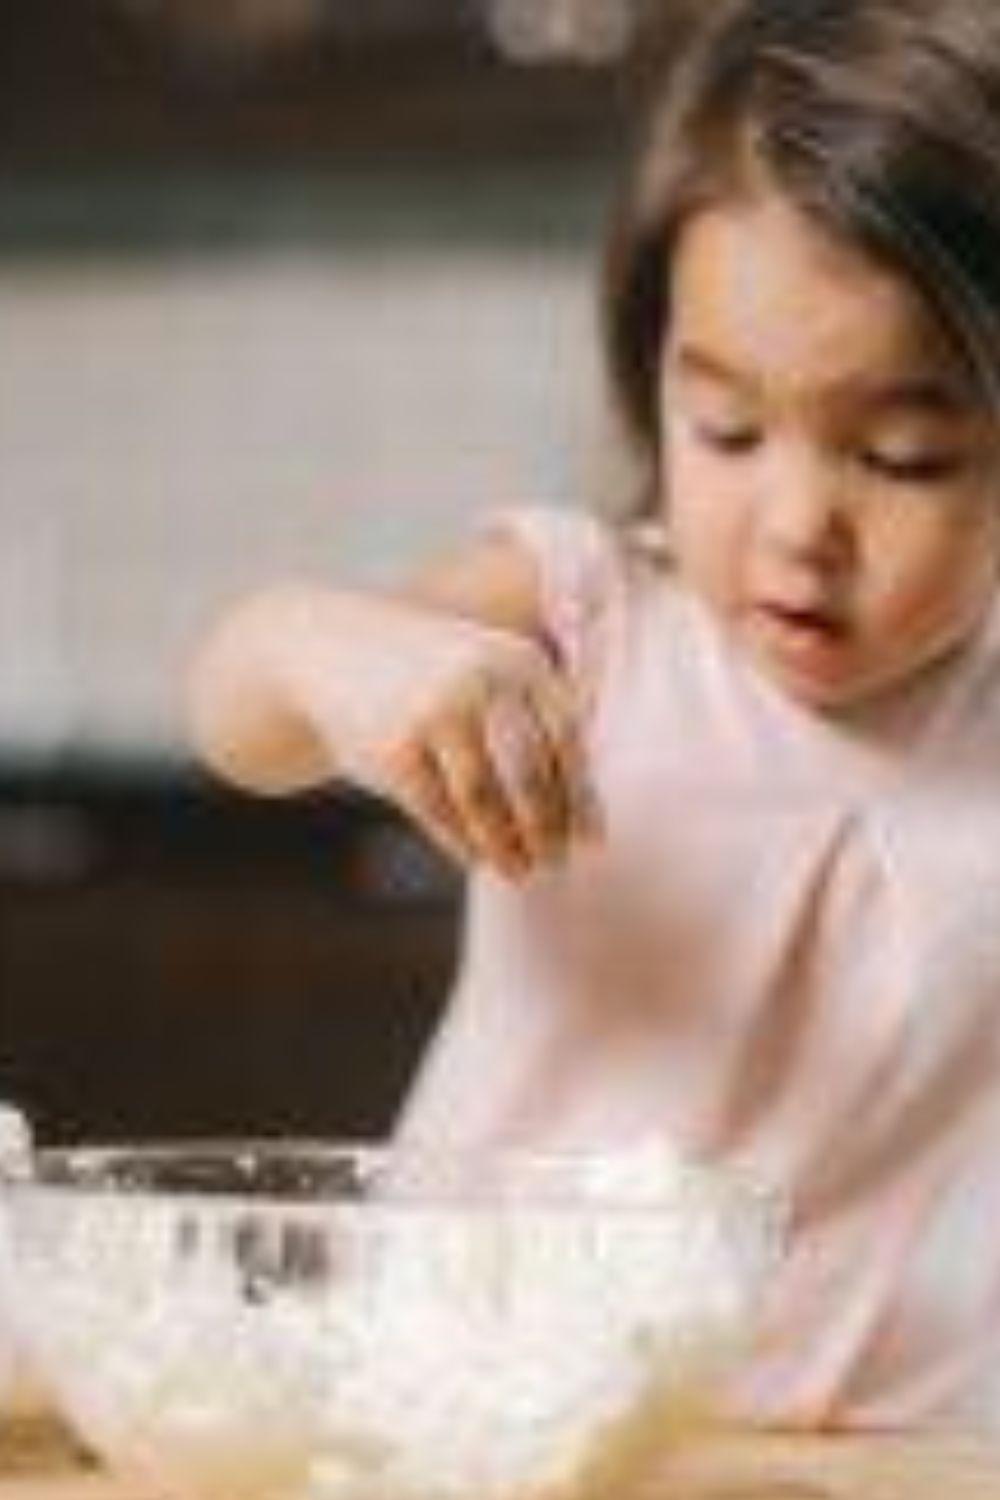 a baby girl mixing dough